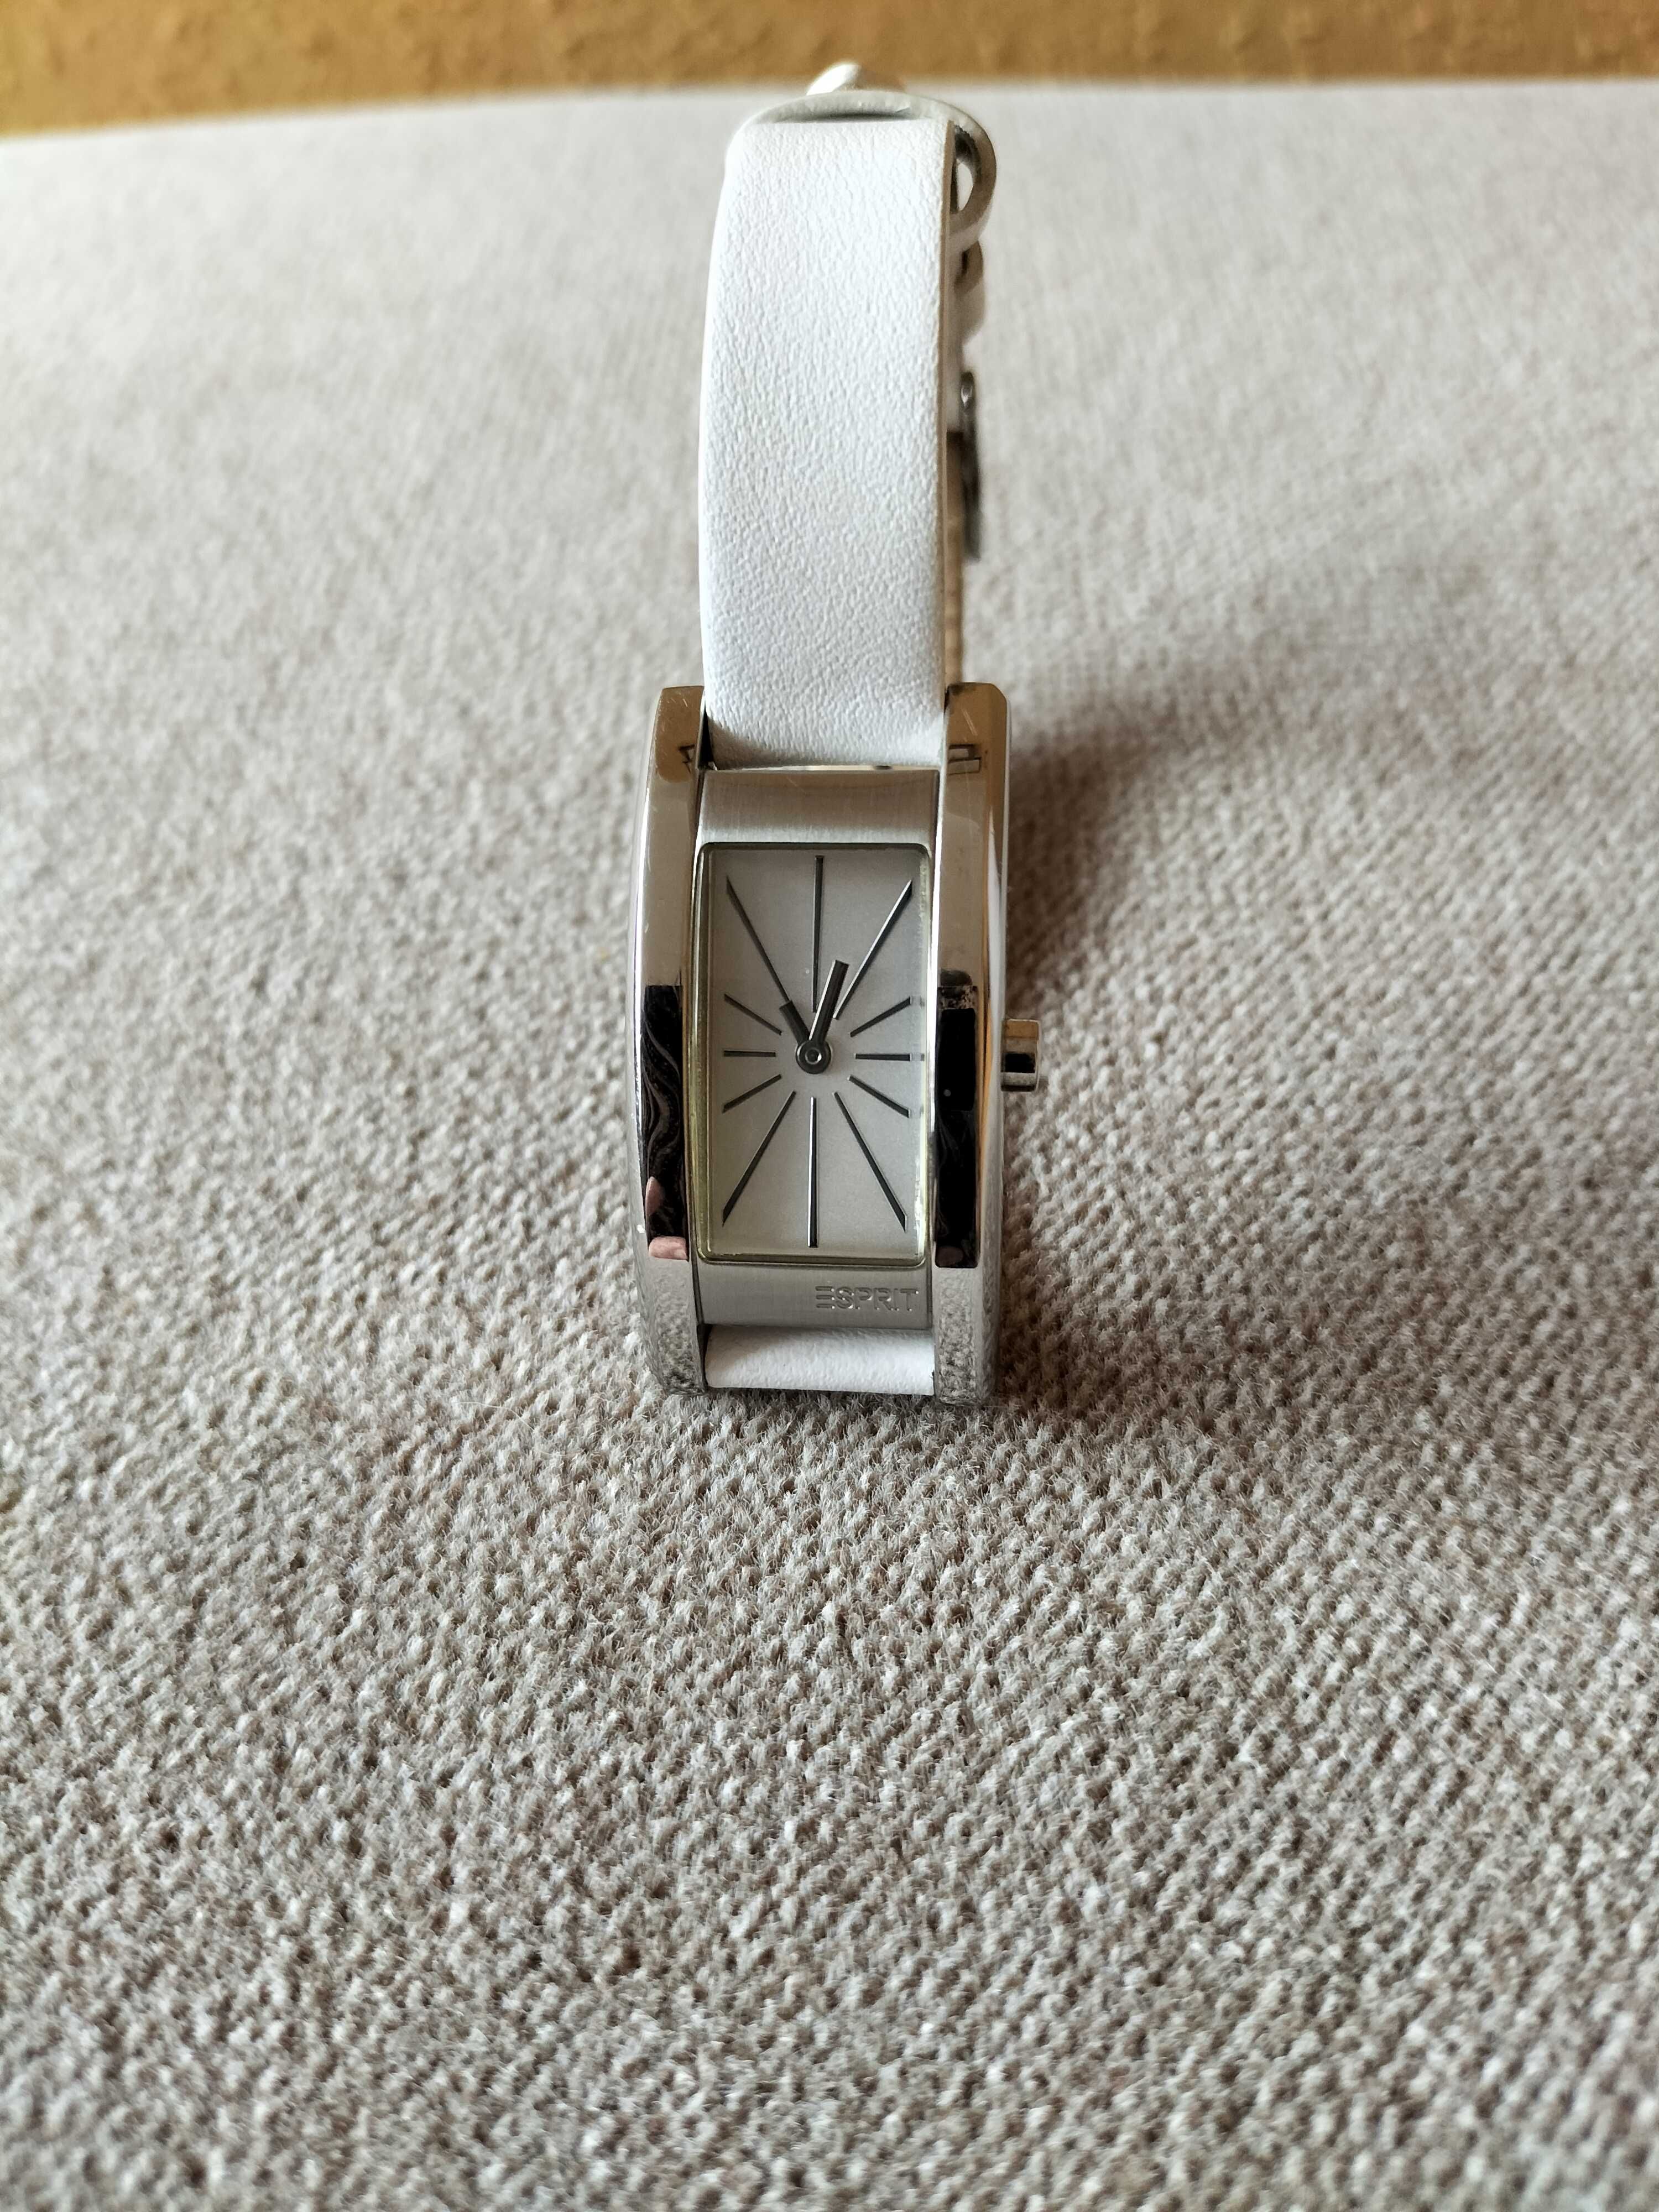 Zegarek damski marki Esprit